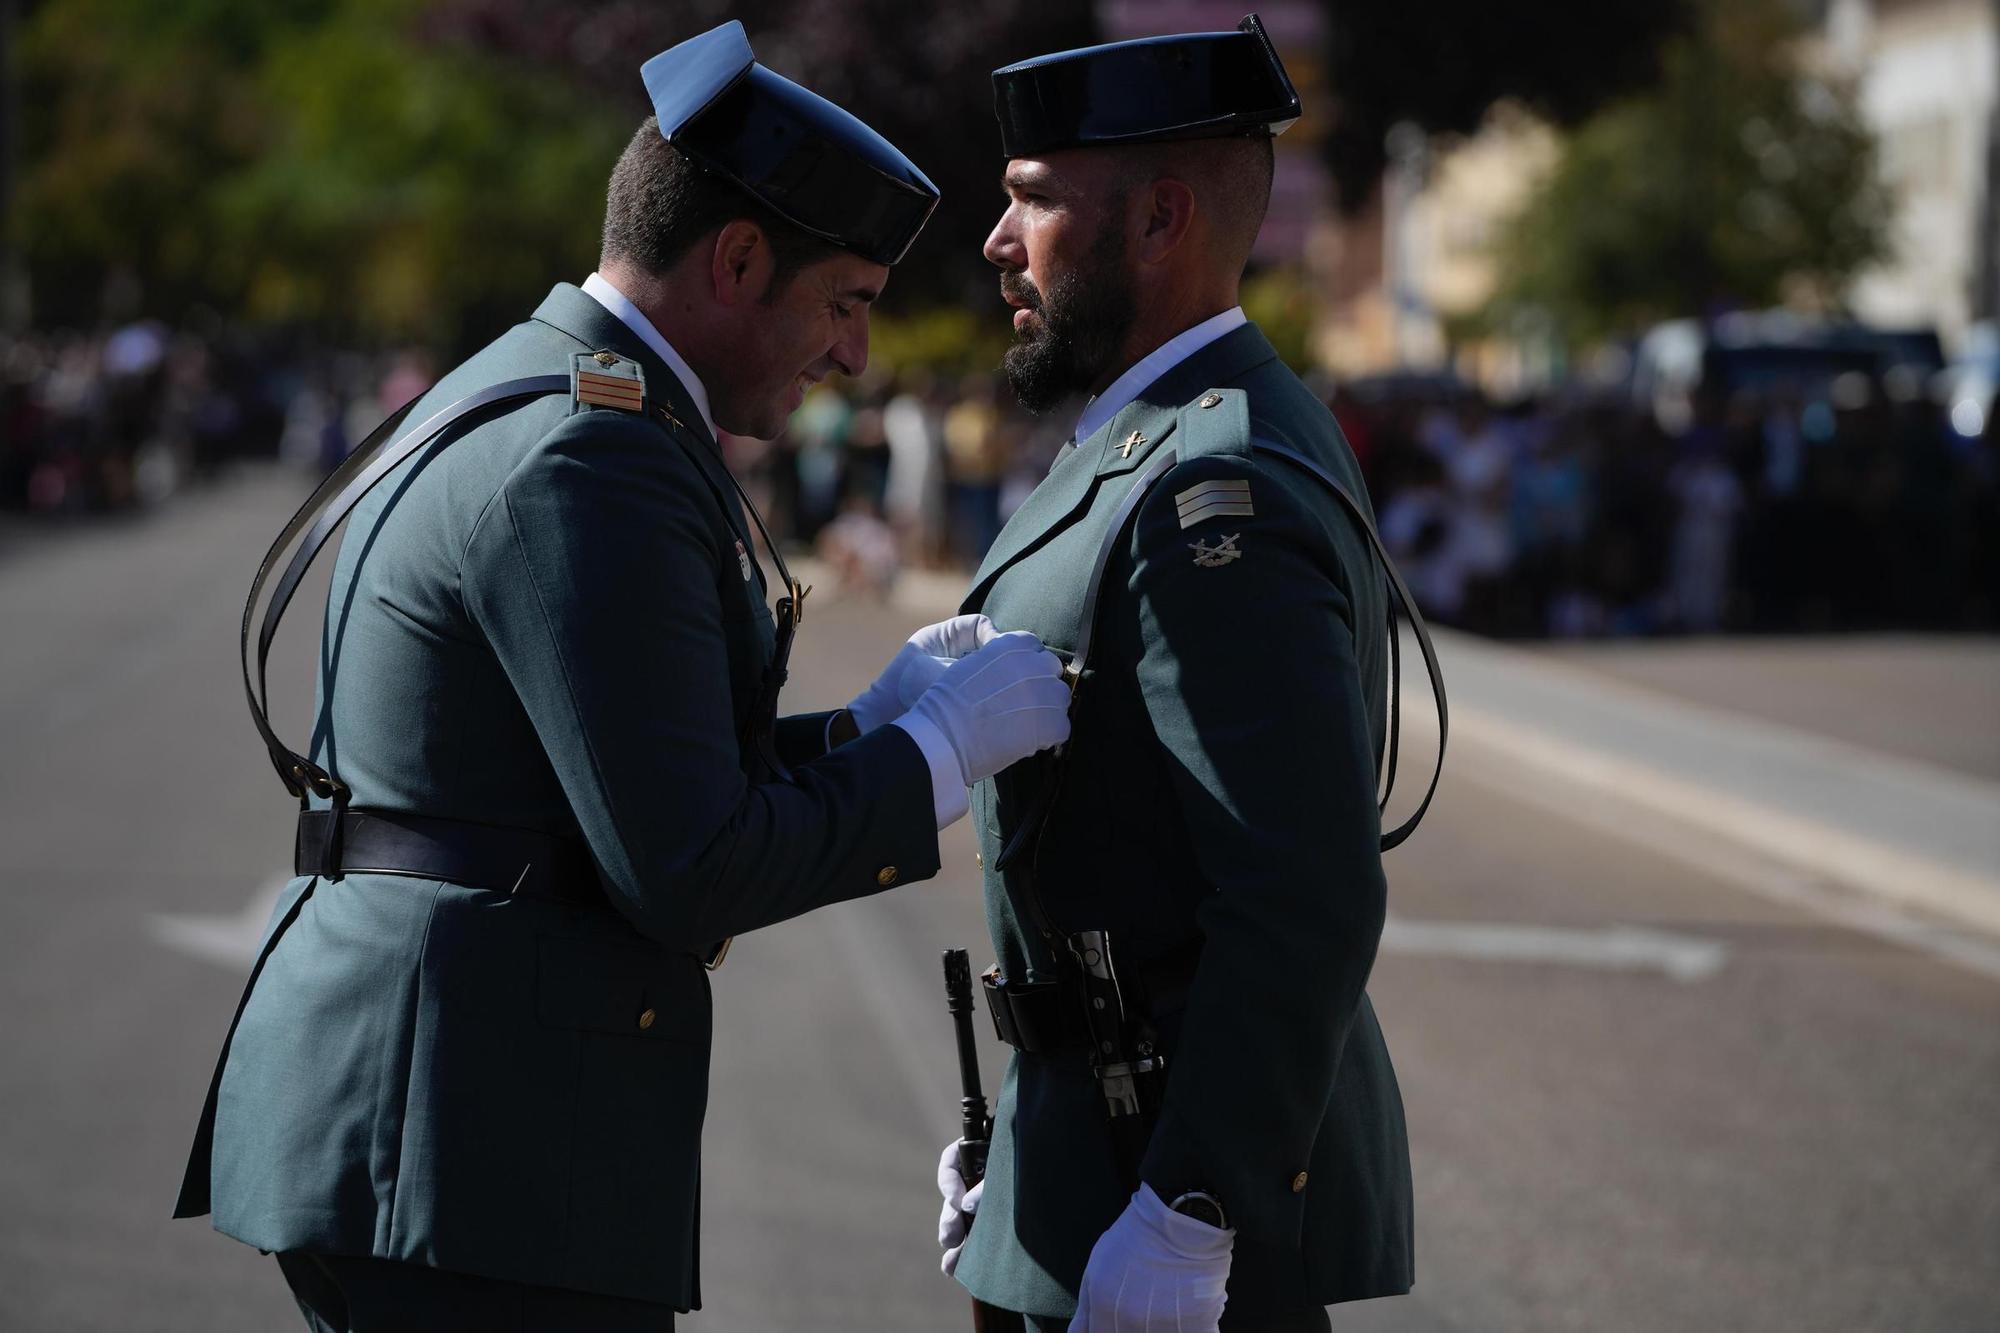 GALERÍA | El desfile del Pilar en Zamora, en imágenes